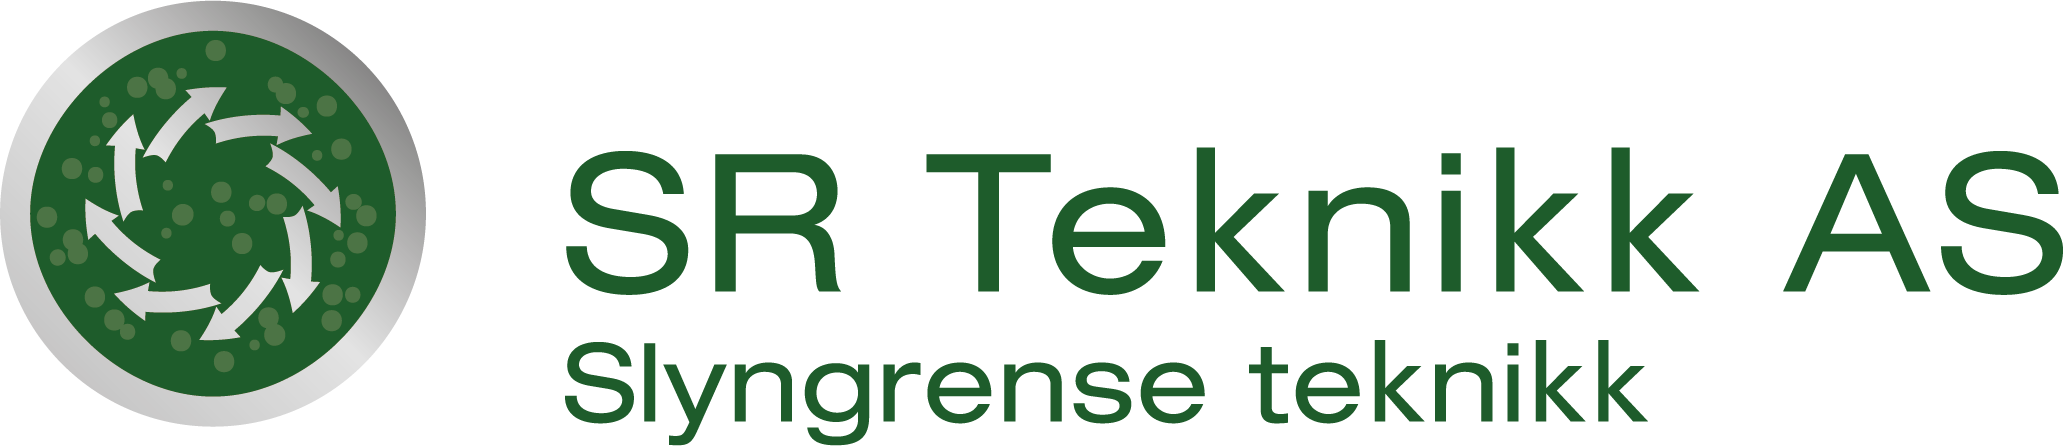 SR Teknikk logo